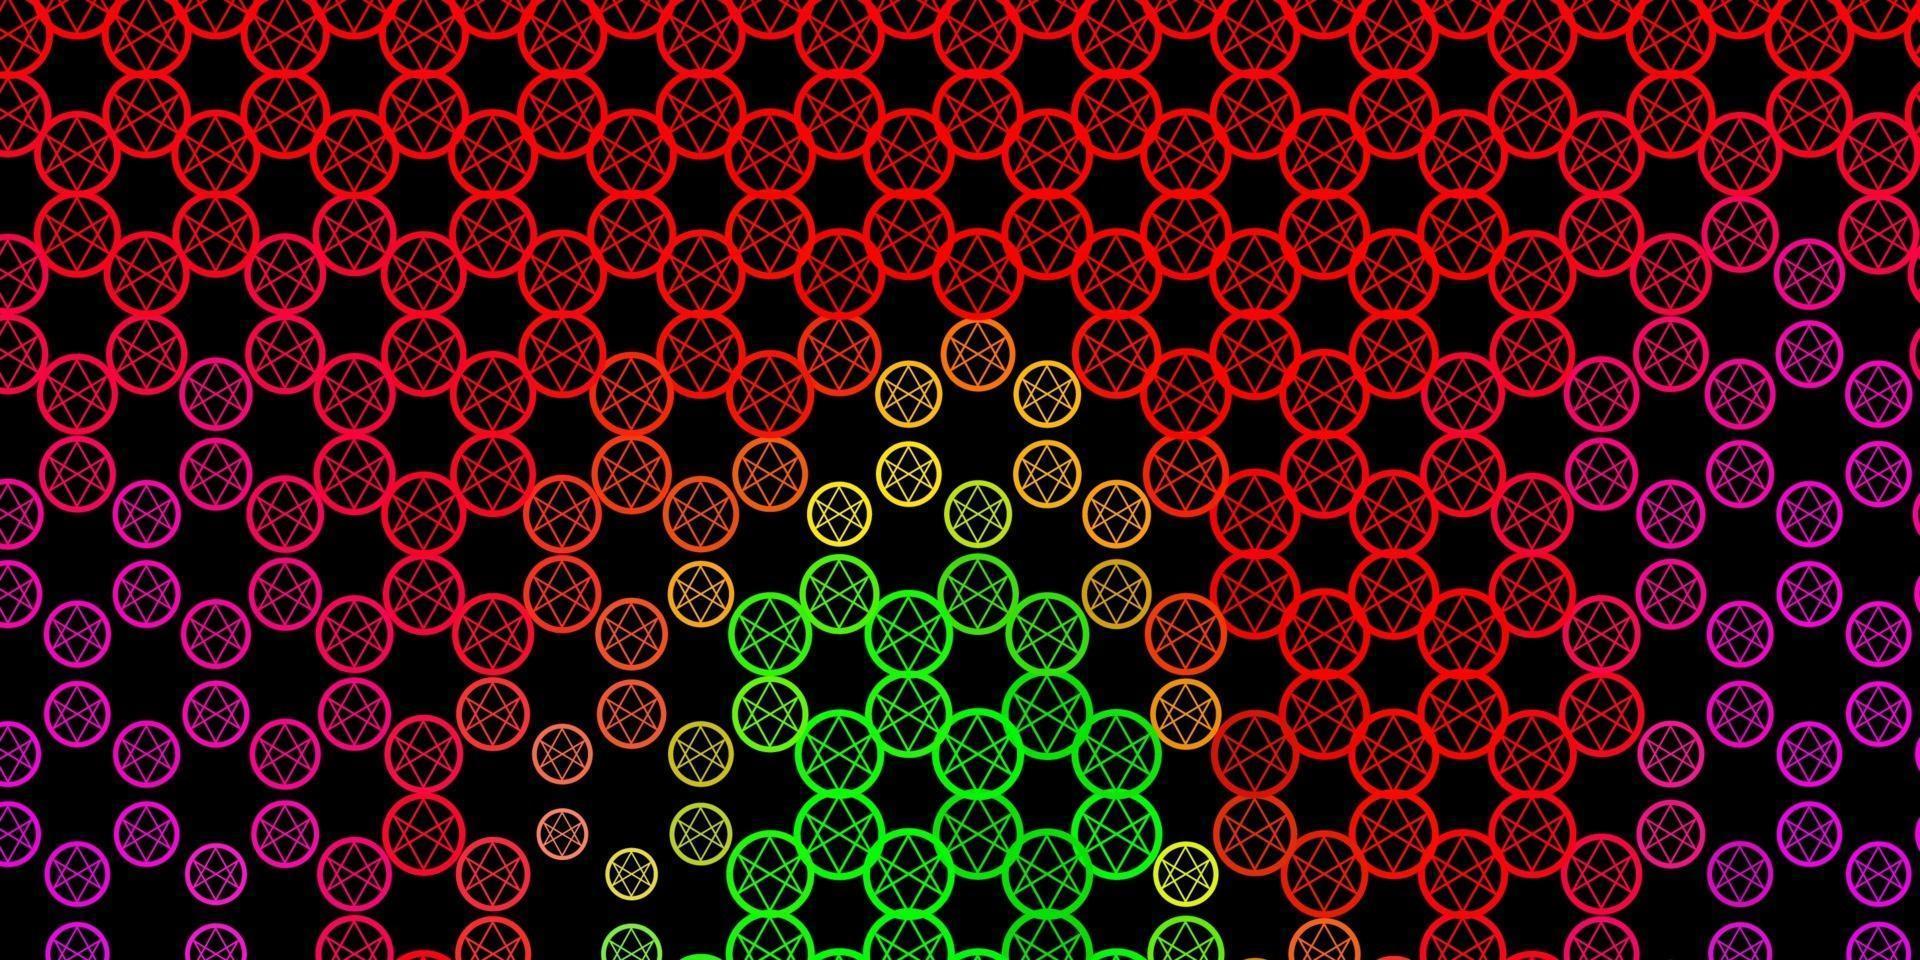 mörkrosa, grön vektorstruktur med religionssymboler. vektor